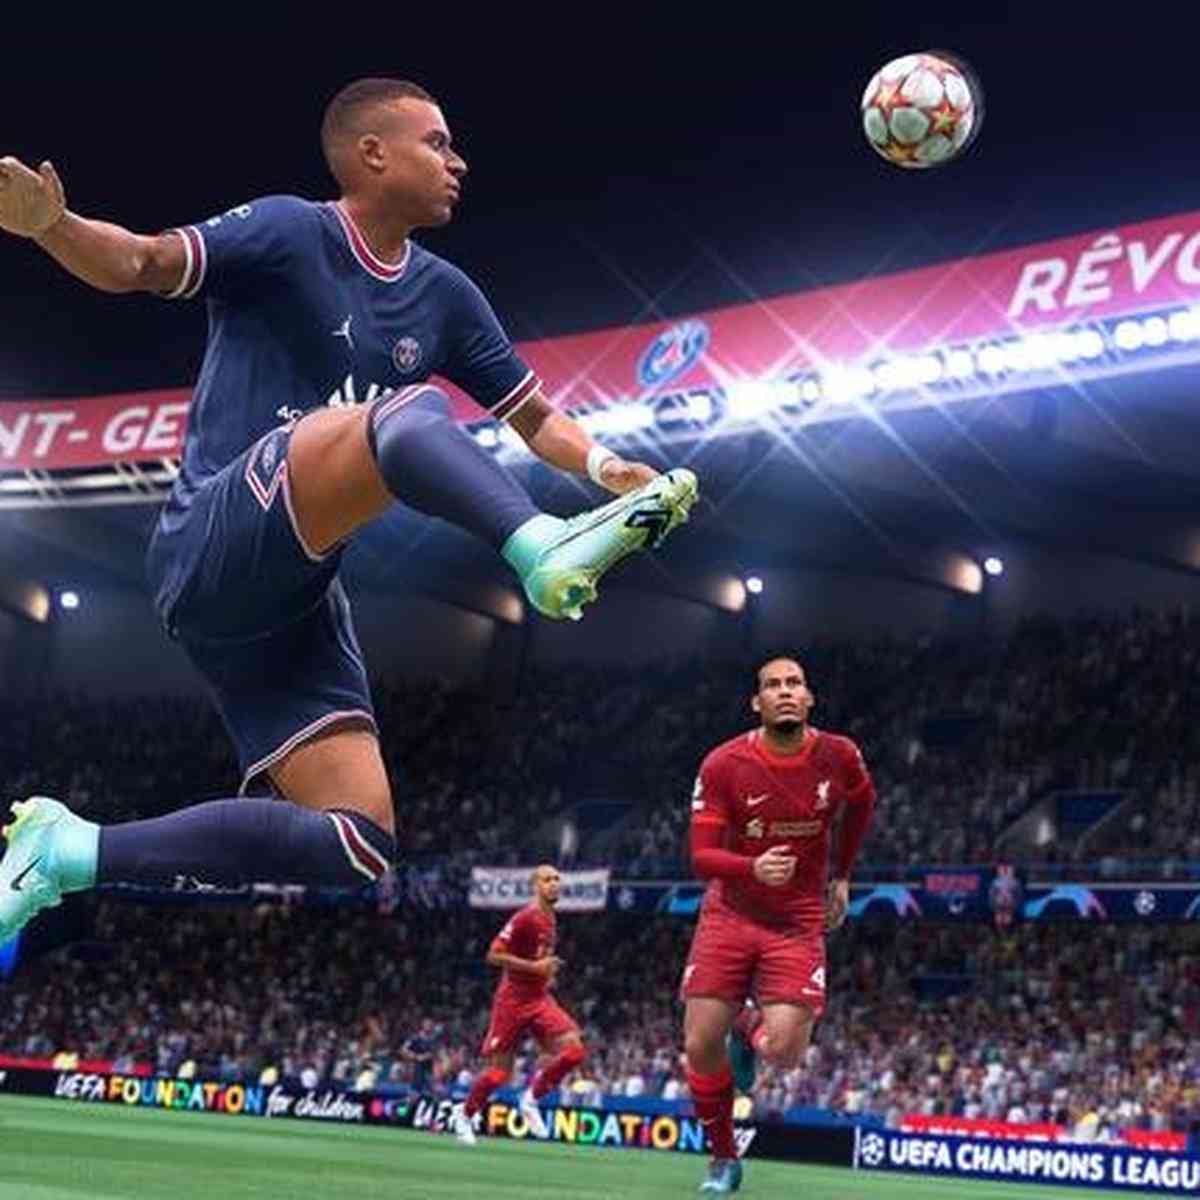 FIFA fará jogos com outros parceiros após fim do contrato com a EA